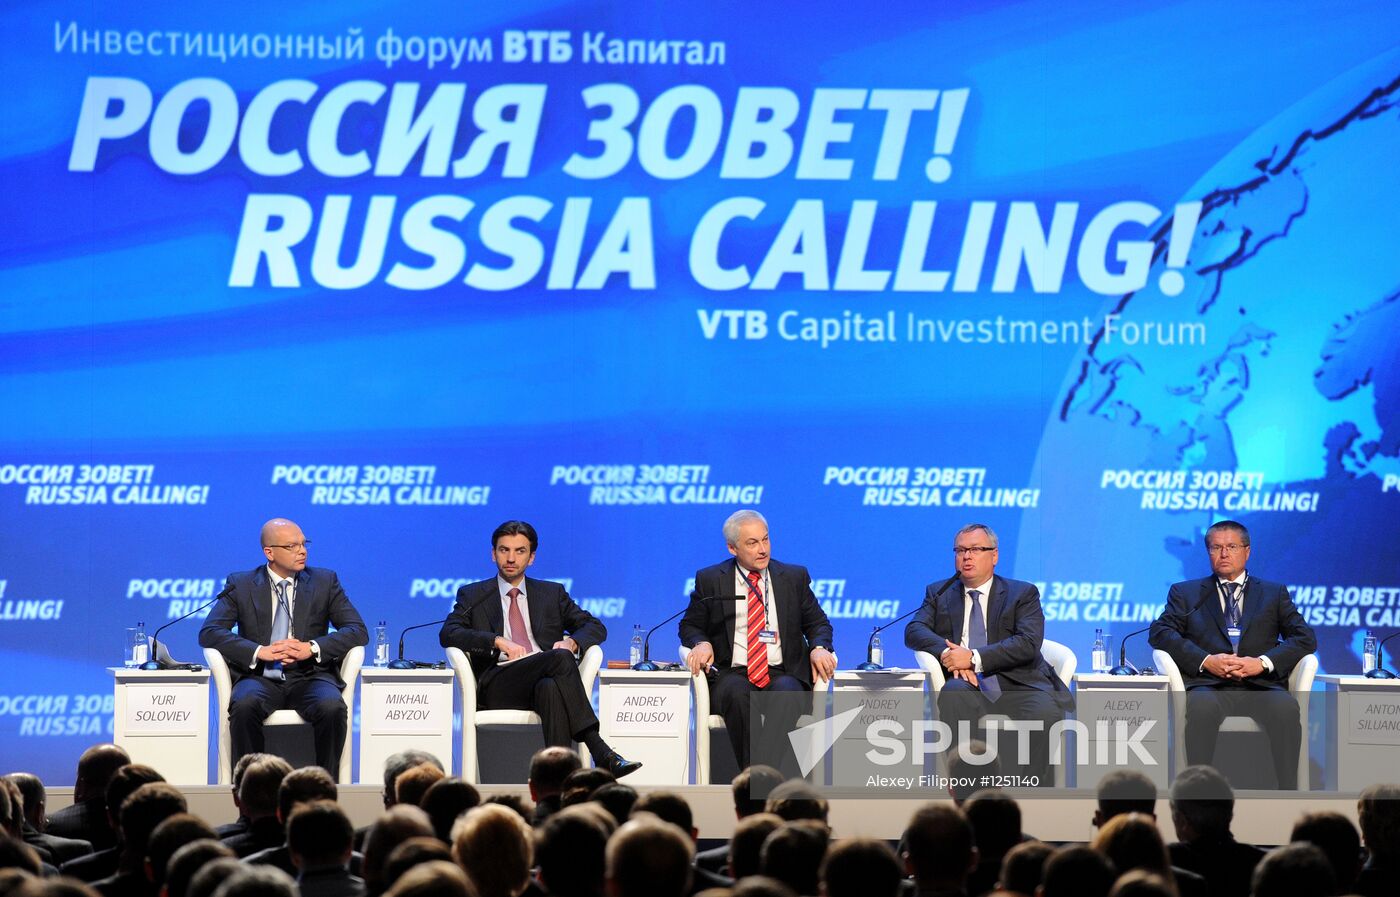 "Russia Calling!" Forum